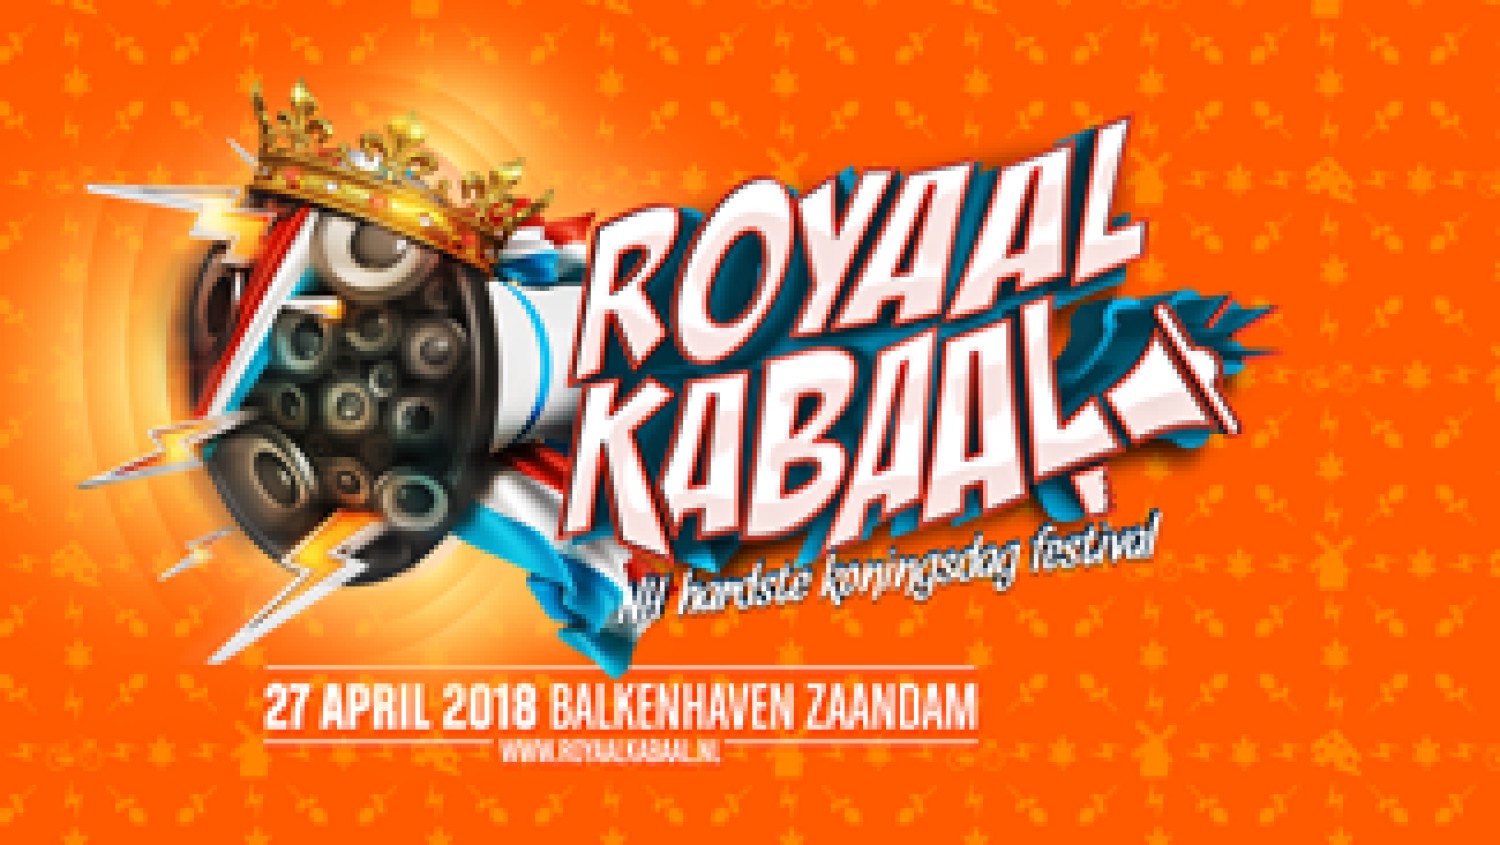 Party nieuws: Royaal Kabaal, hardste Koningsdag festival is terug!